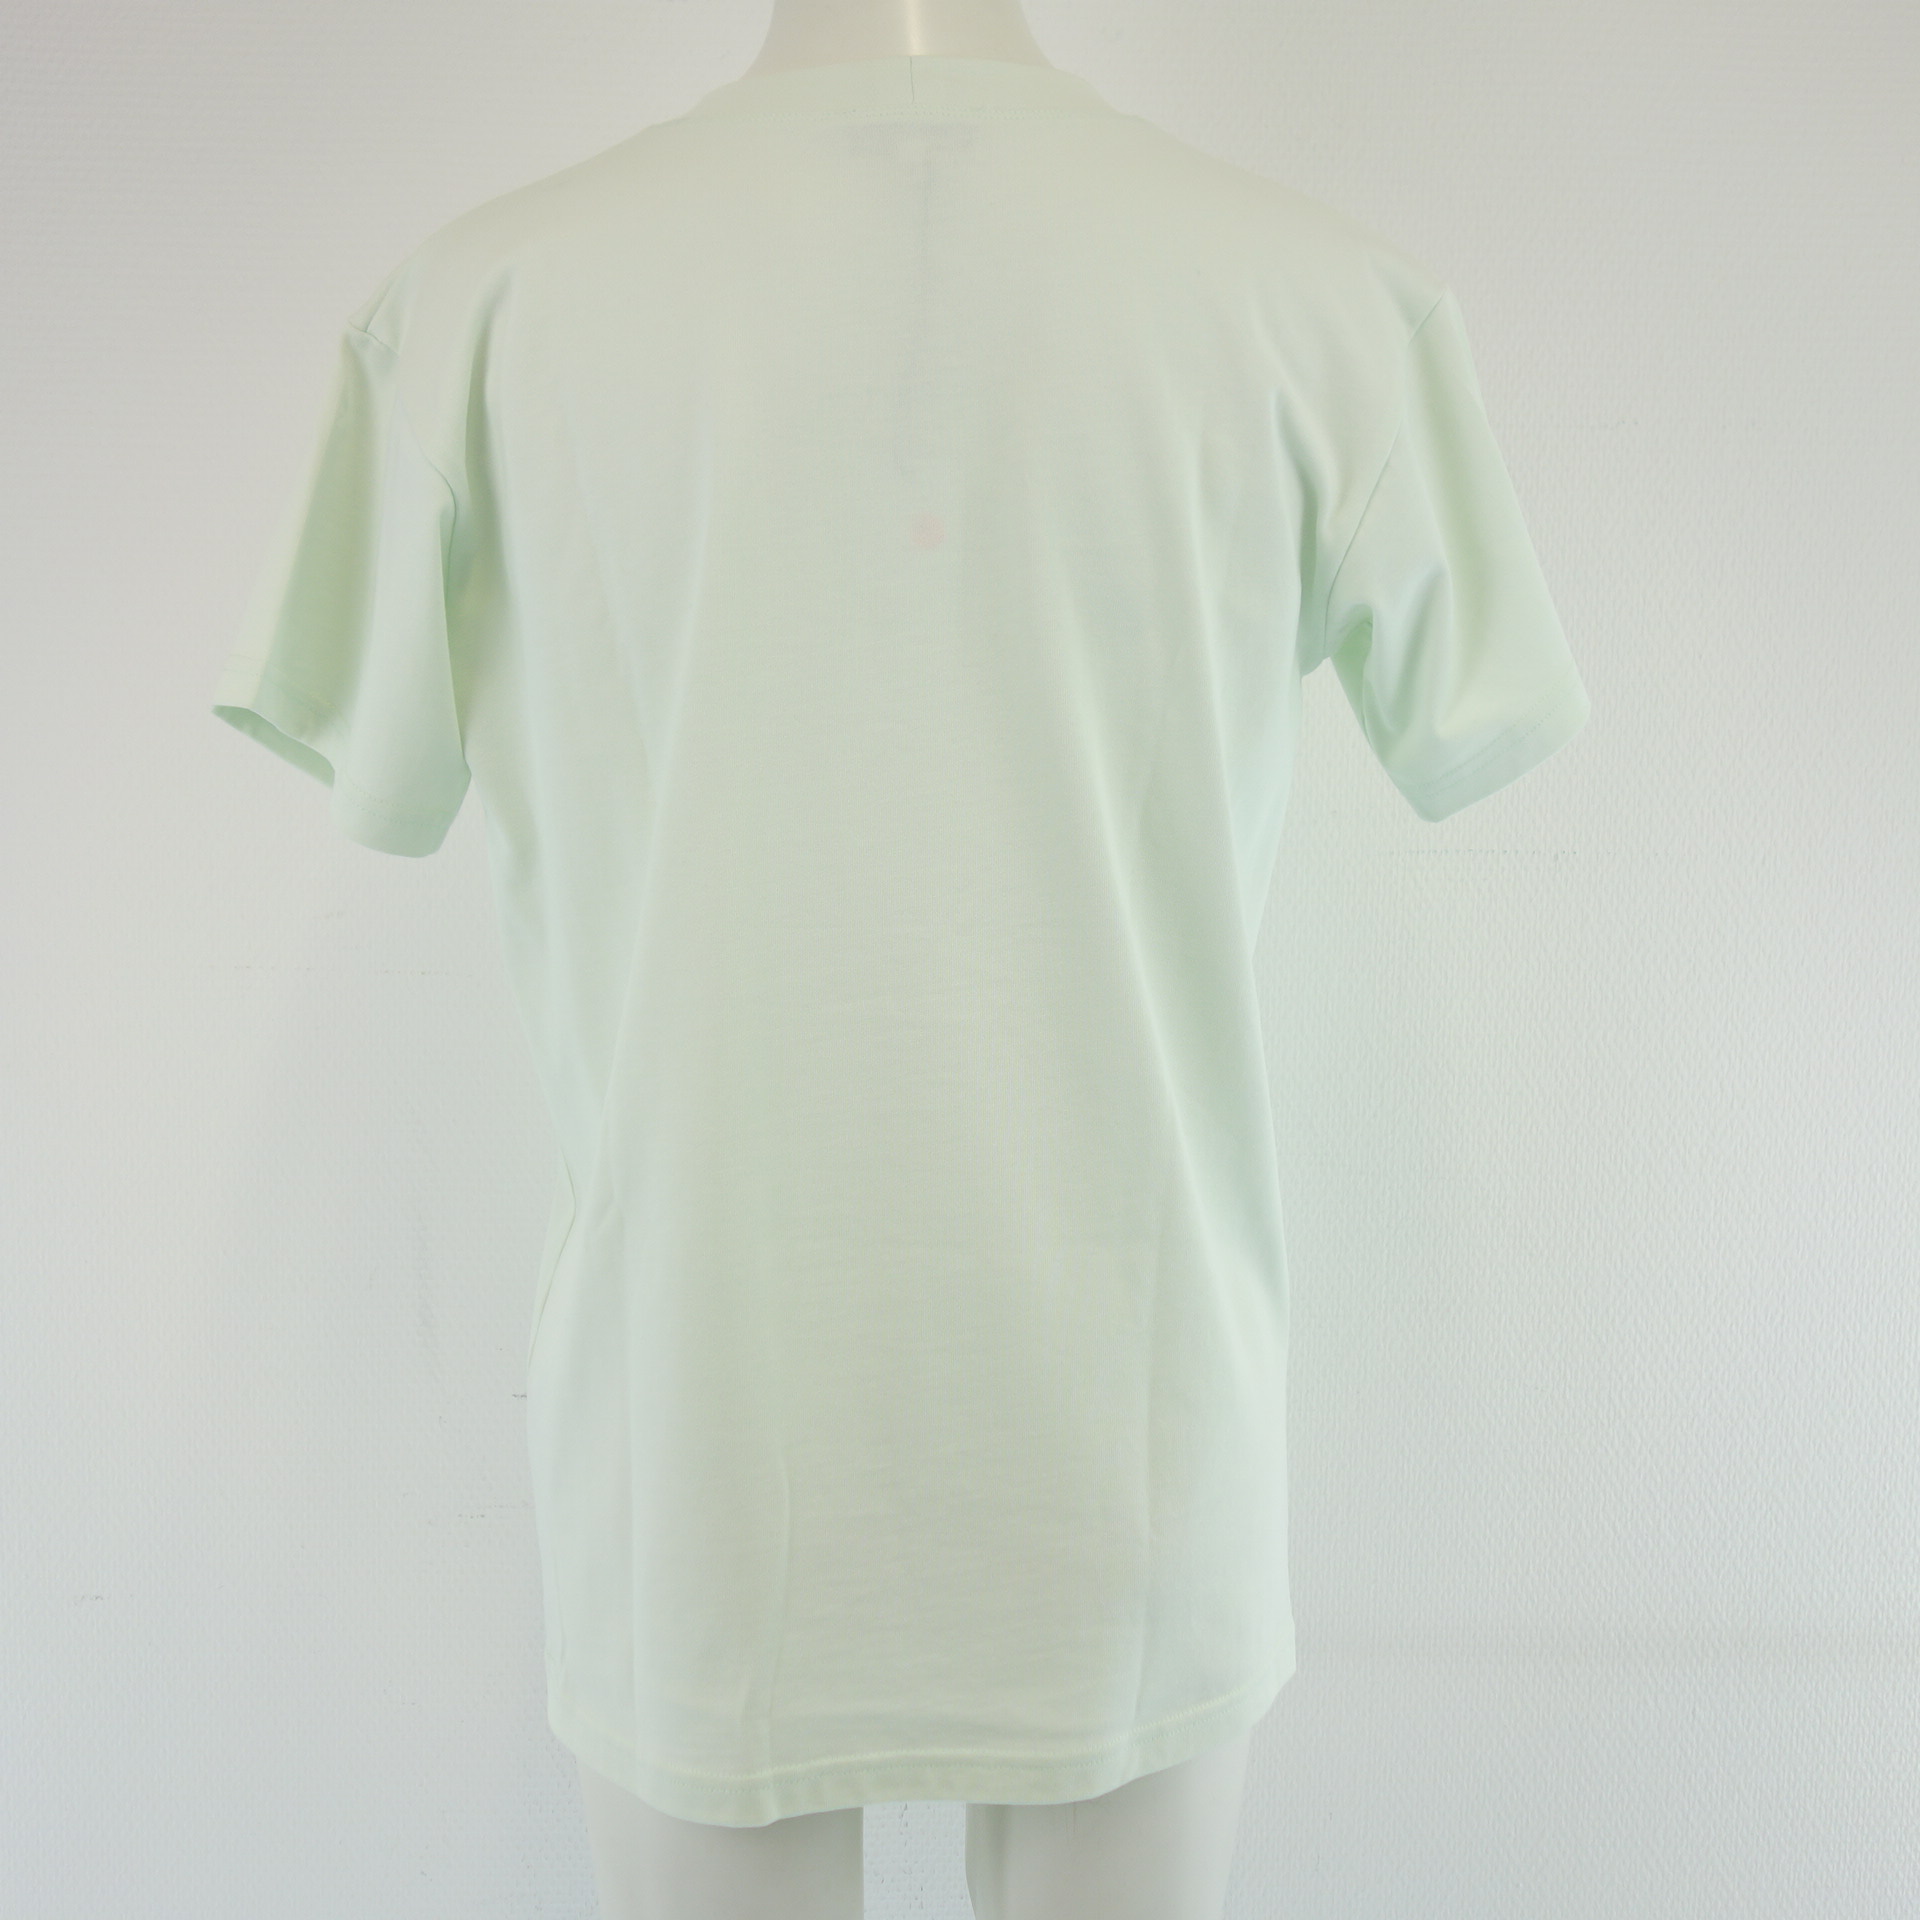 MONIQUE VAN HEIST Jersey Shirt Modell Boy Pastell Mint Grün Baumwolle Größe S